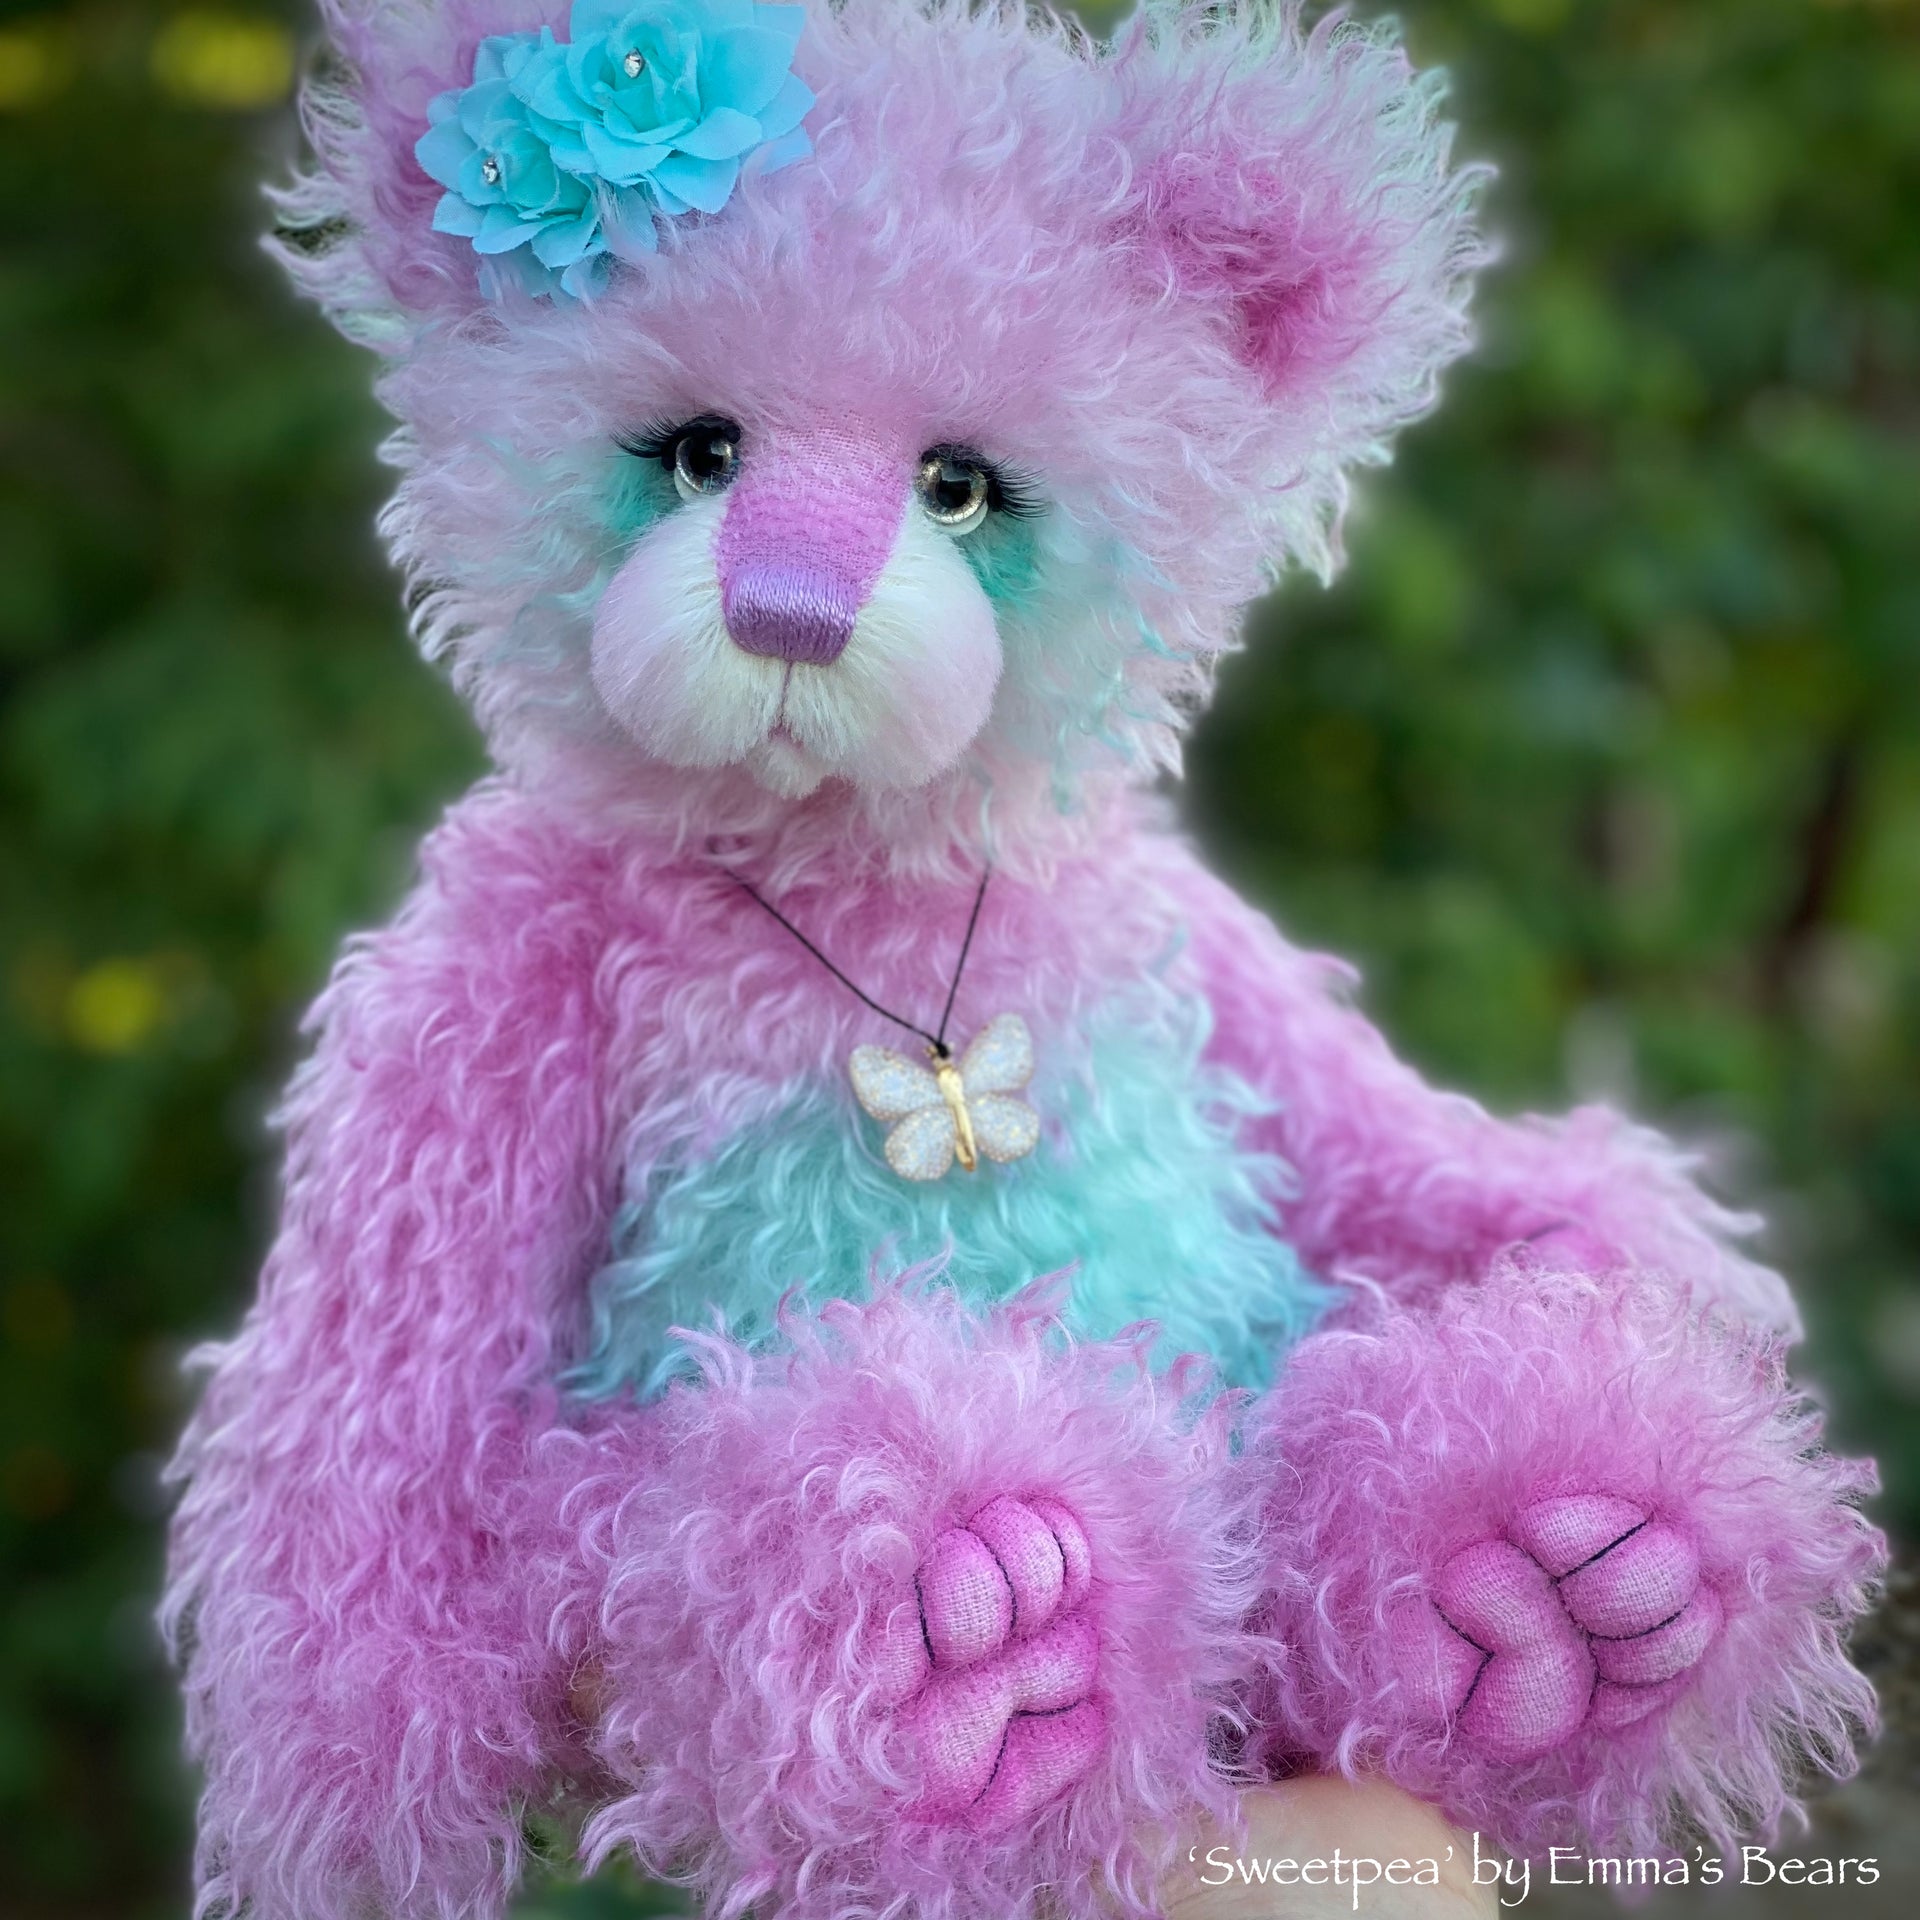 Sweetpea - 16" Hand-dyed Curlylocks Mohair Artist Bear by Emma's Bears - OOAK